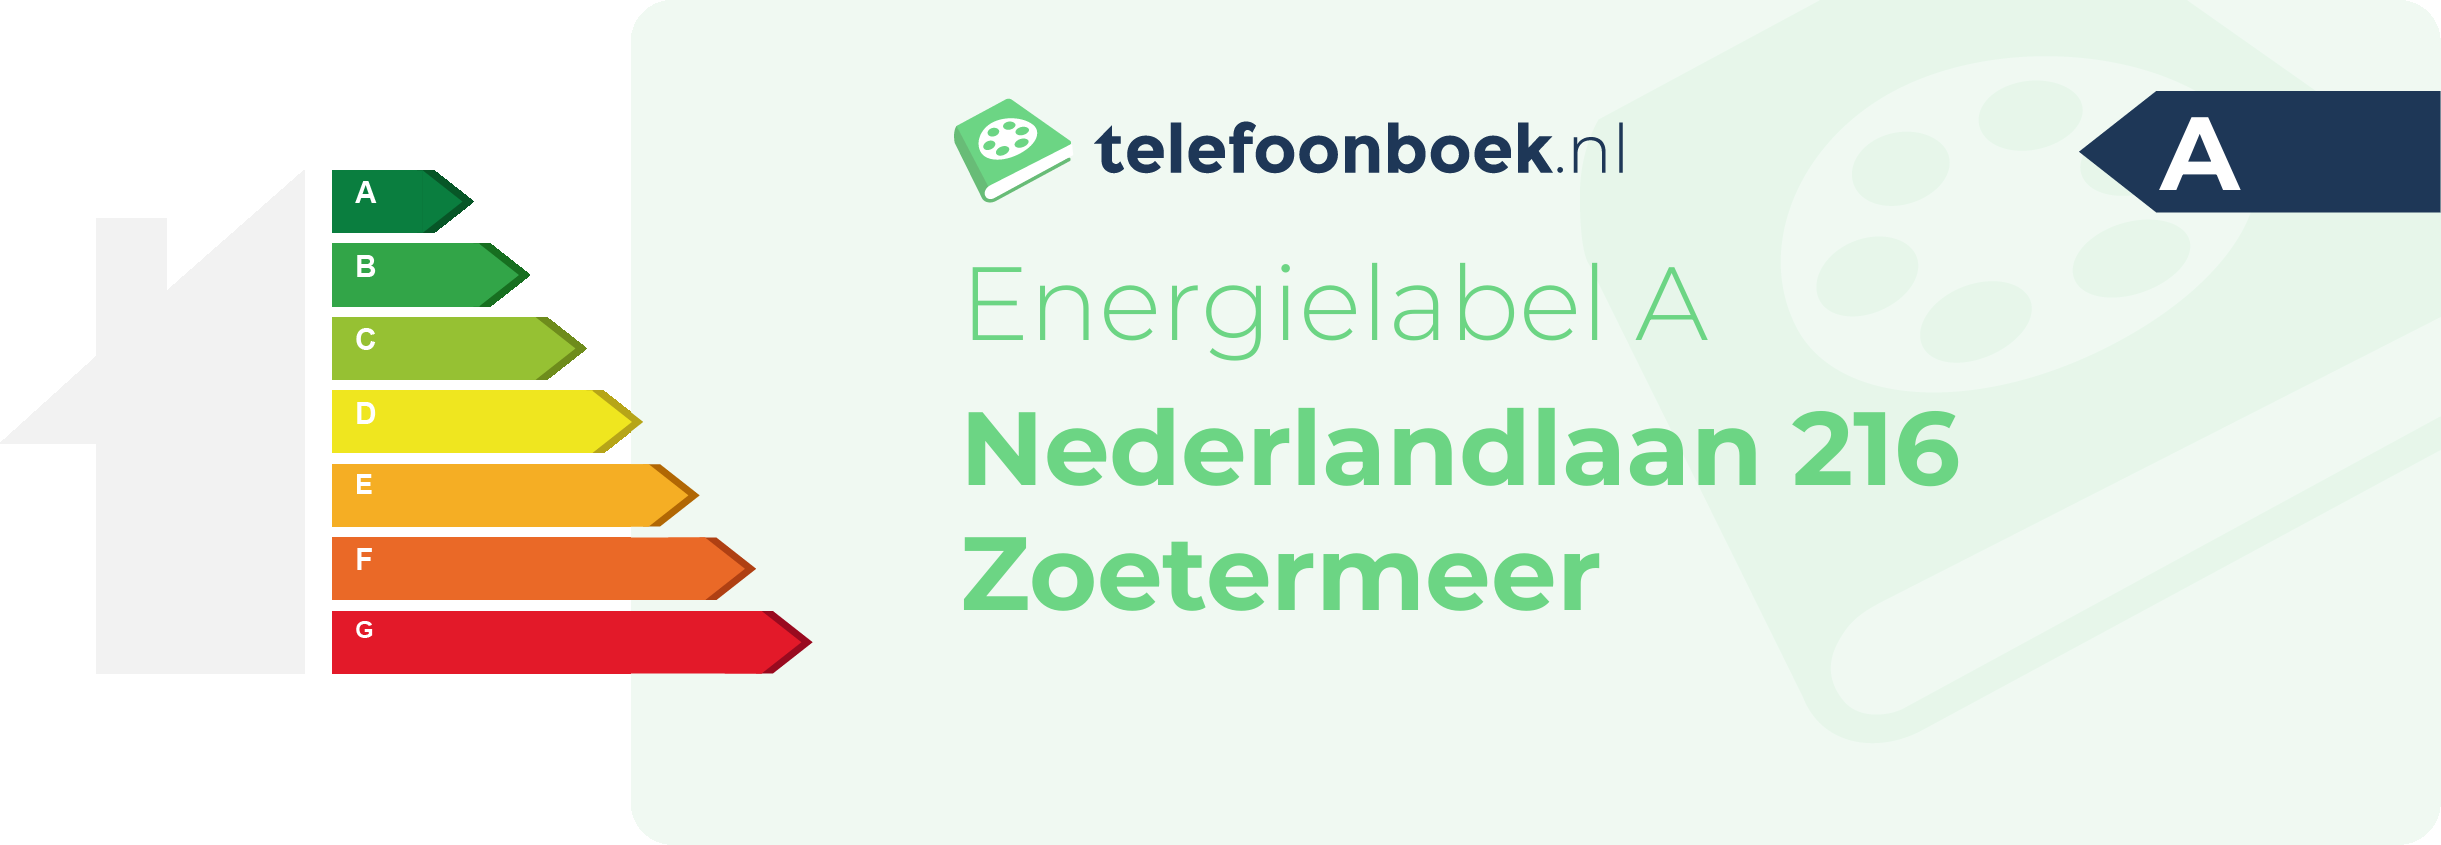 Energielabel Nederlandlaan 216 Zoetermeer